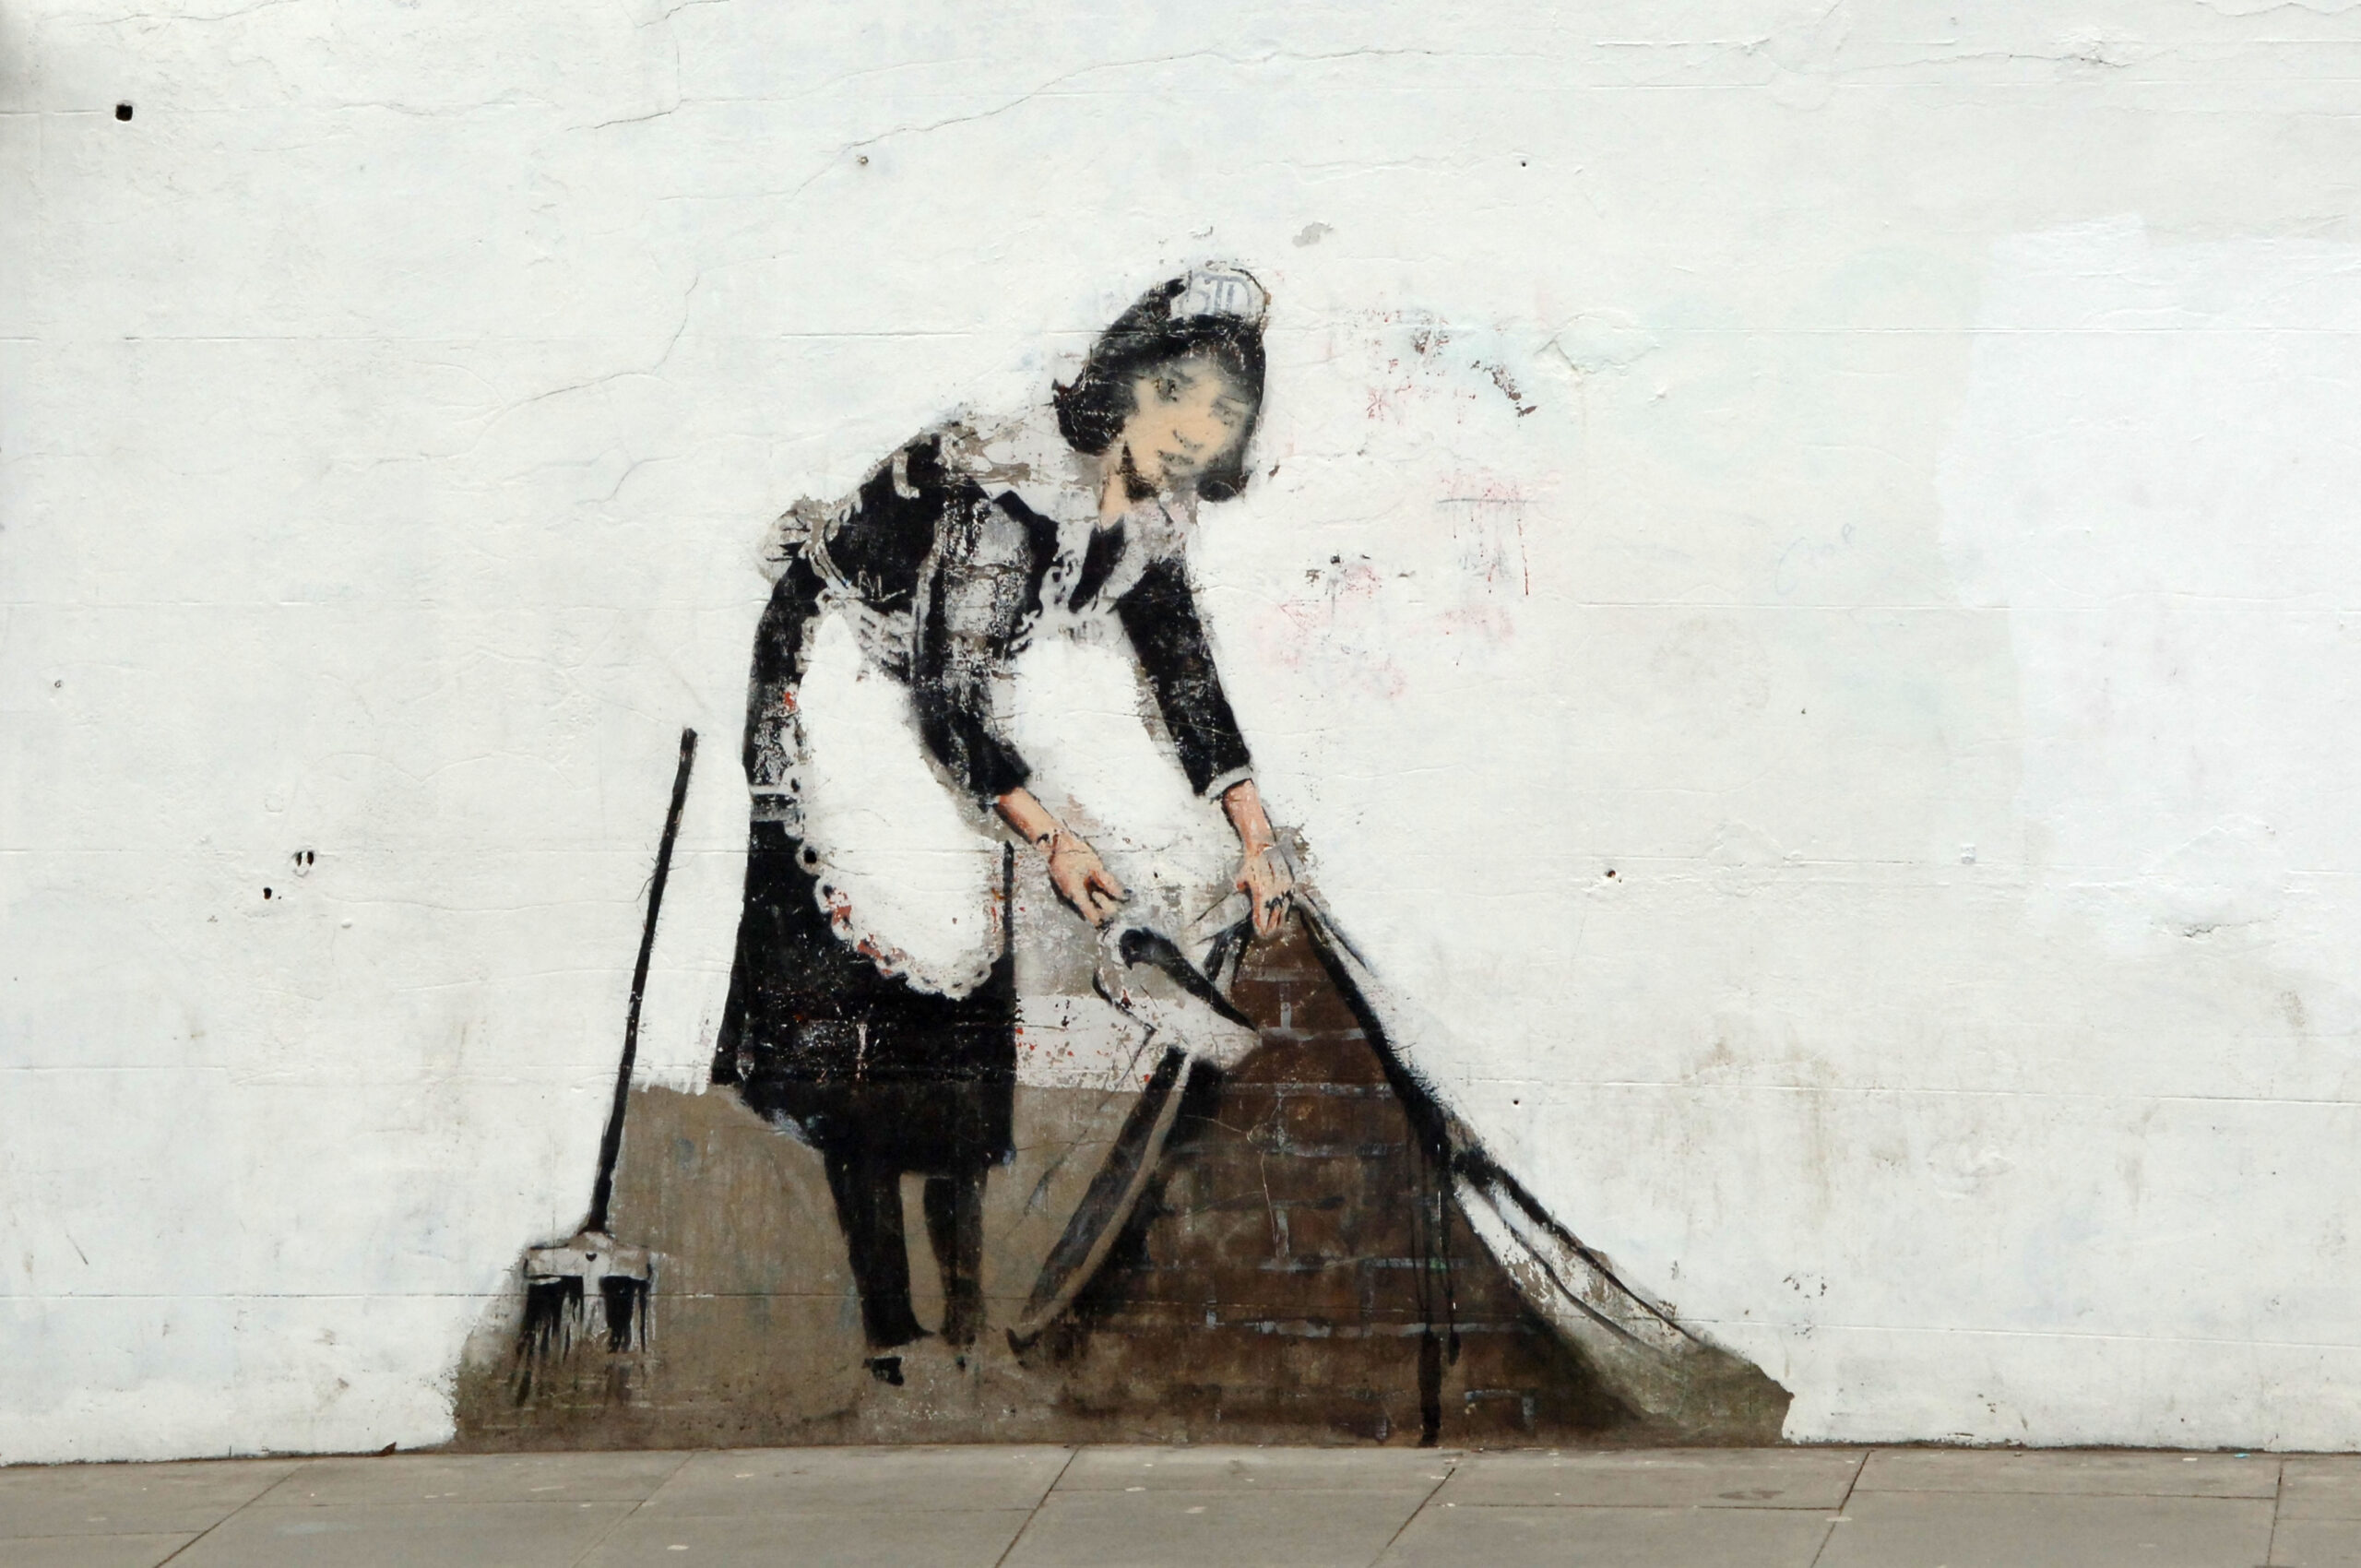 A famous Banksy in Camden, London